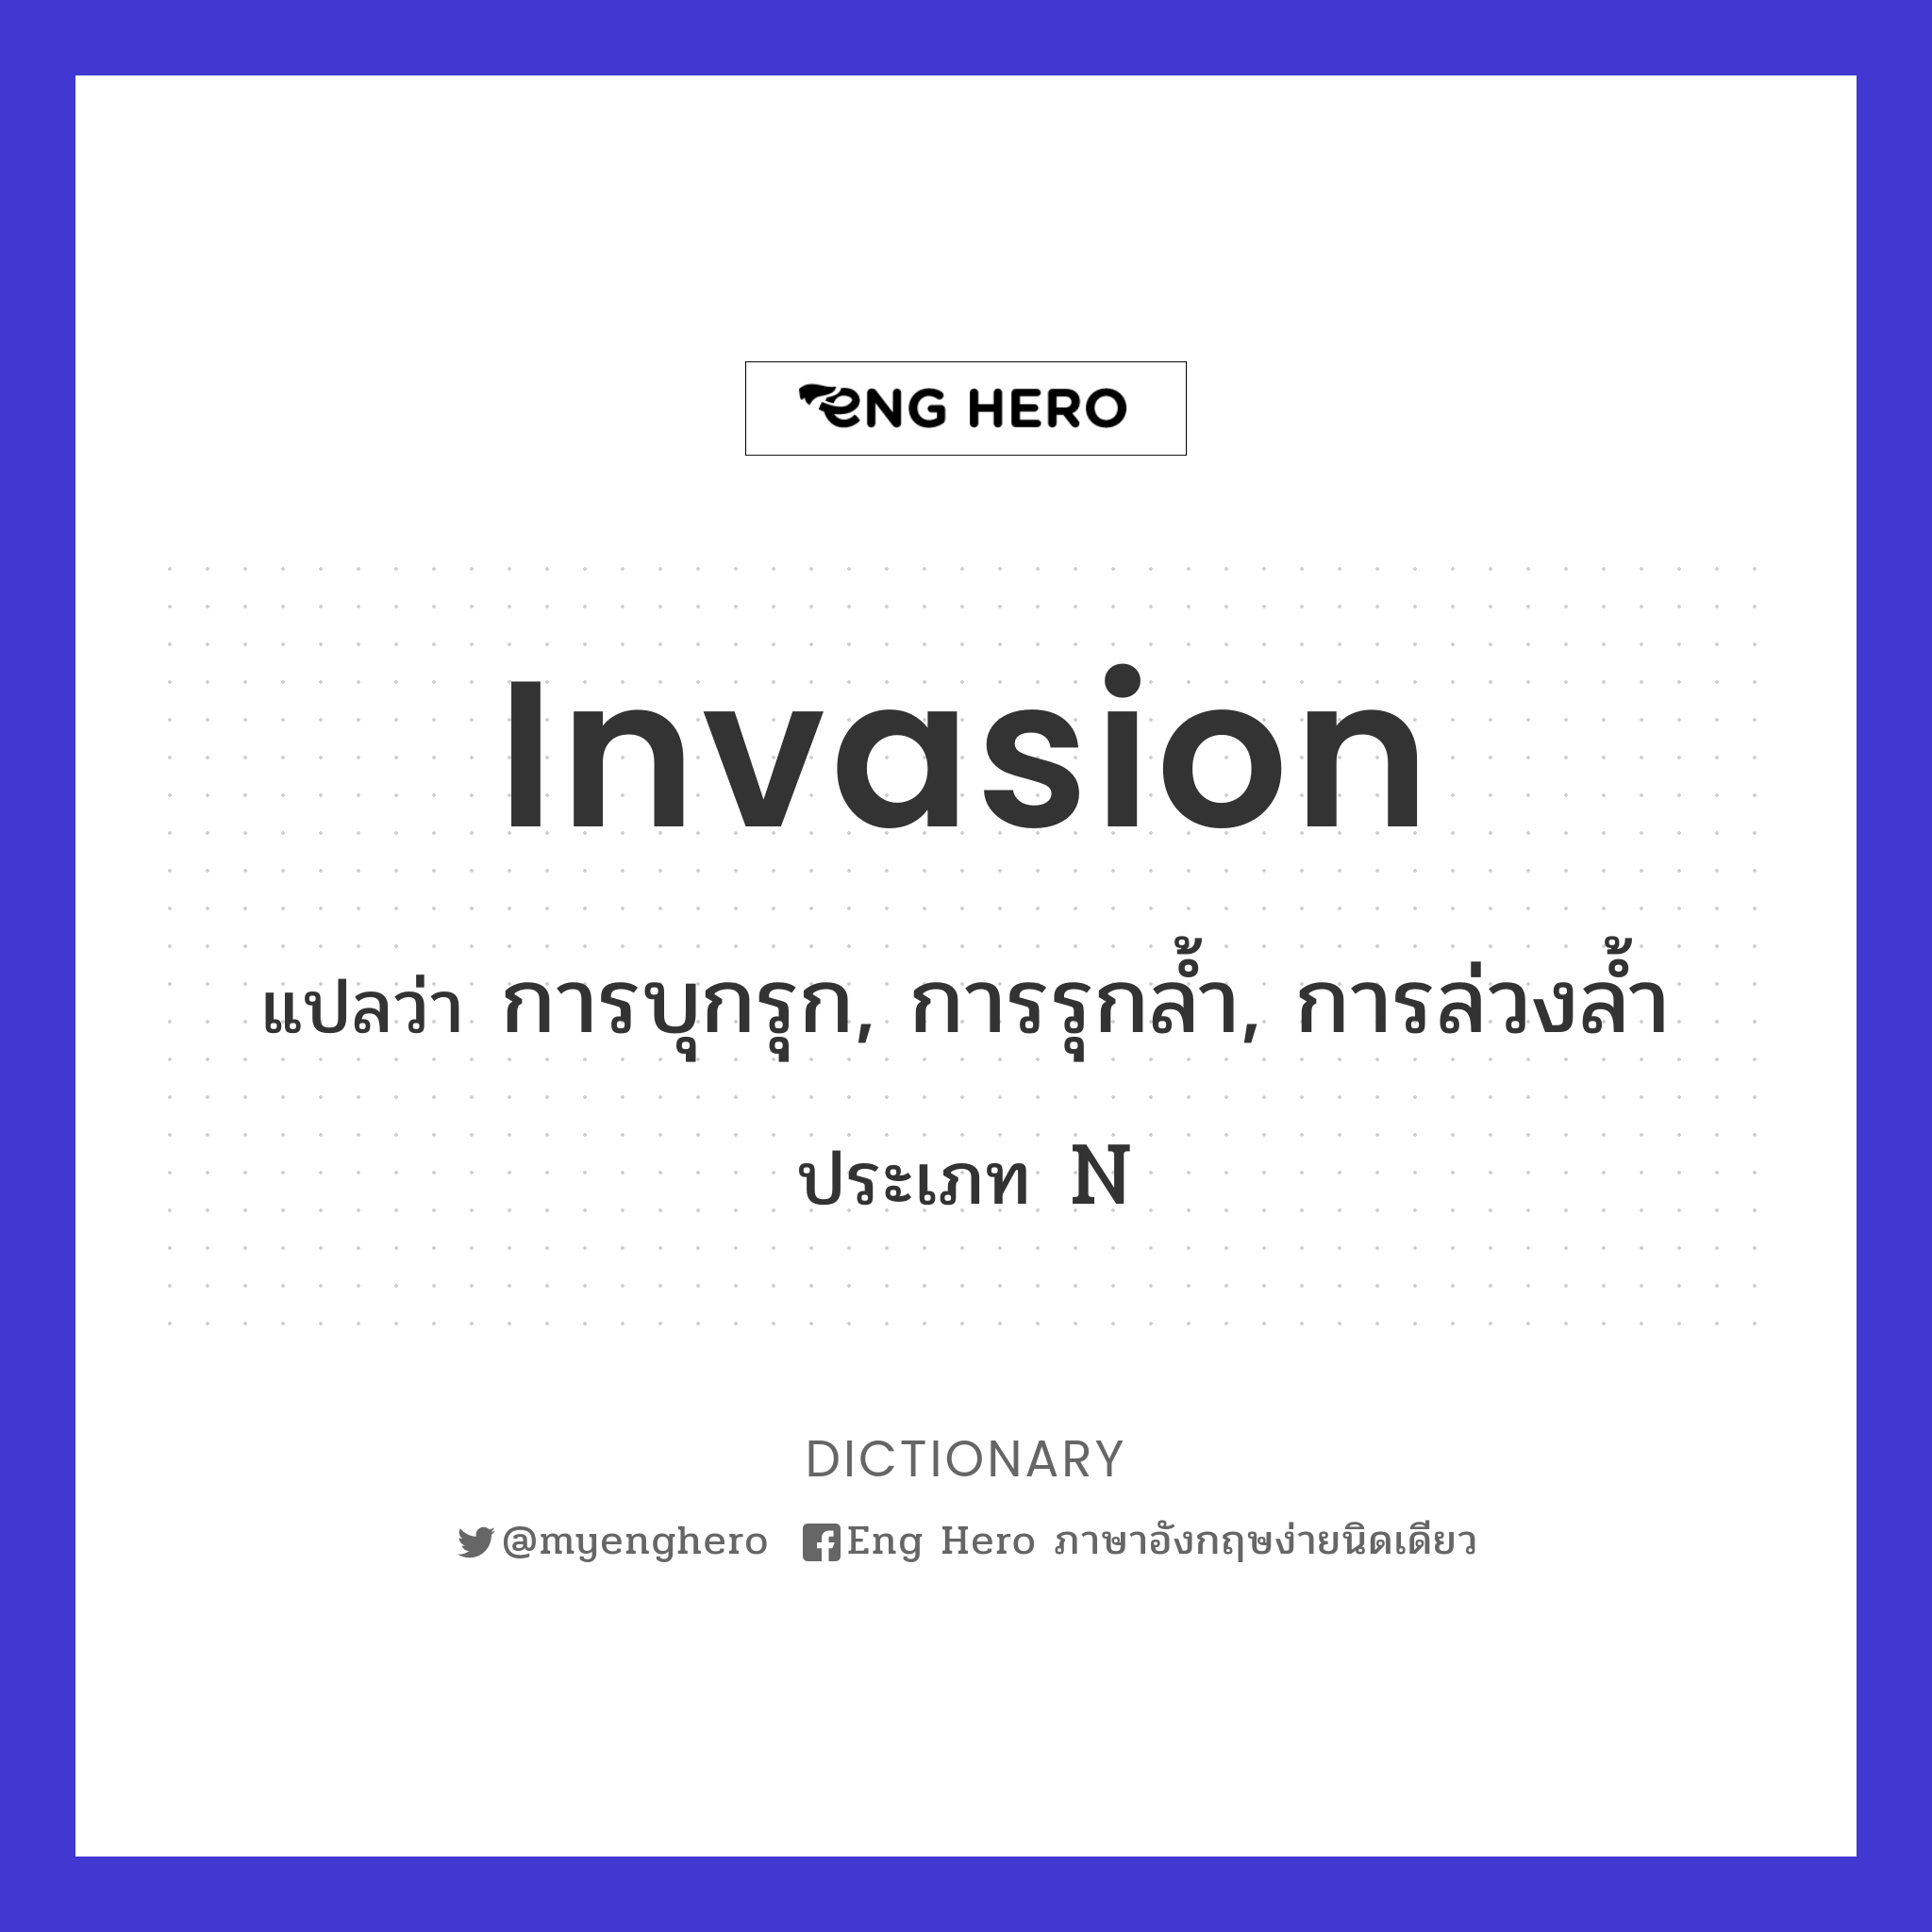 invasion